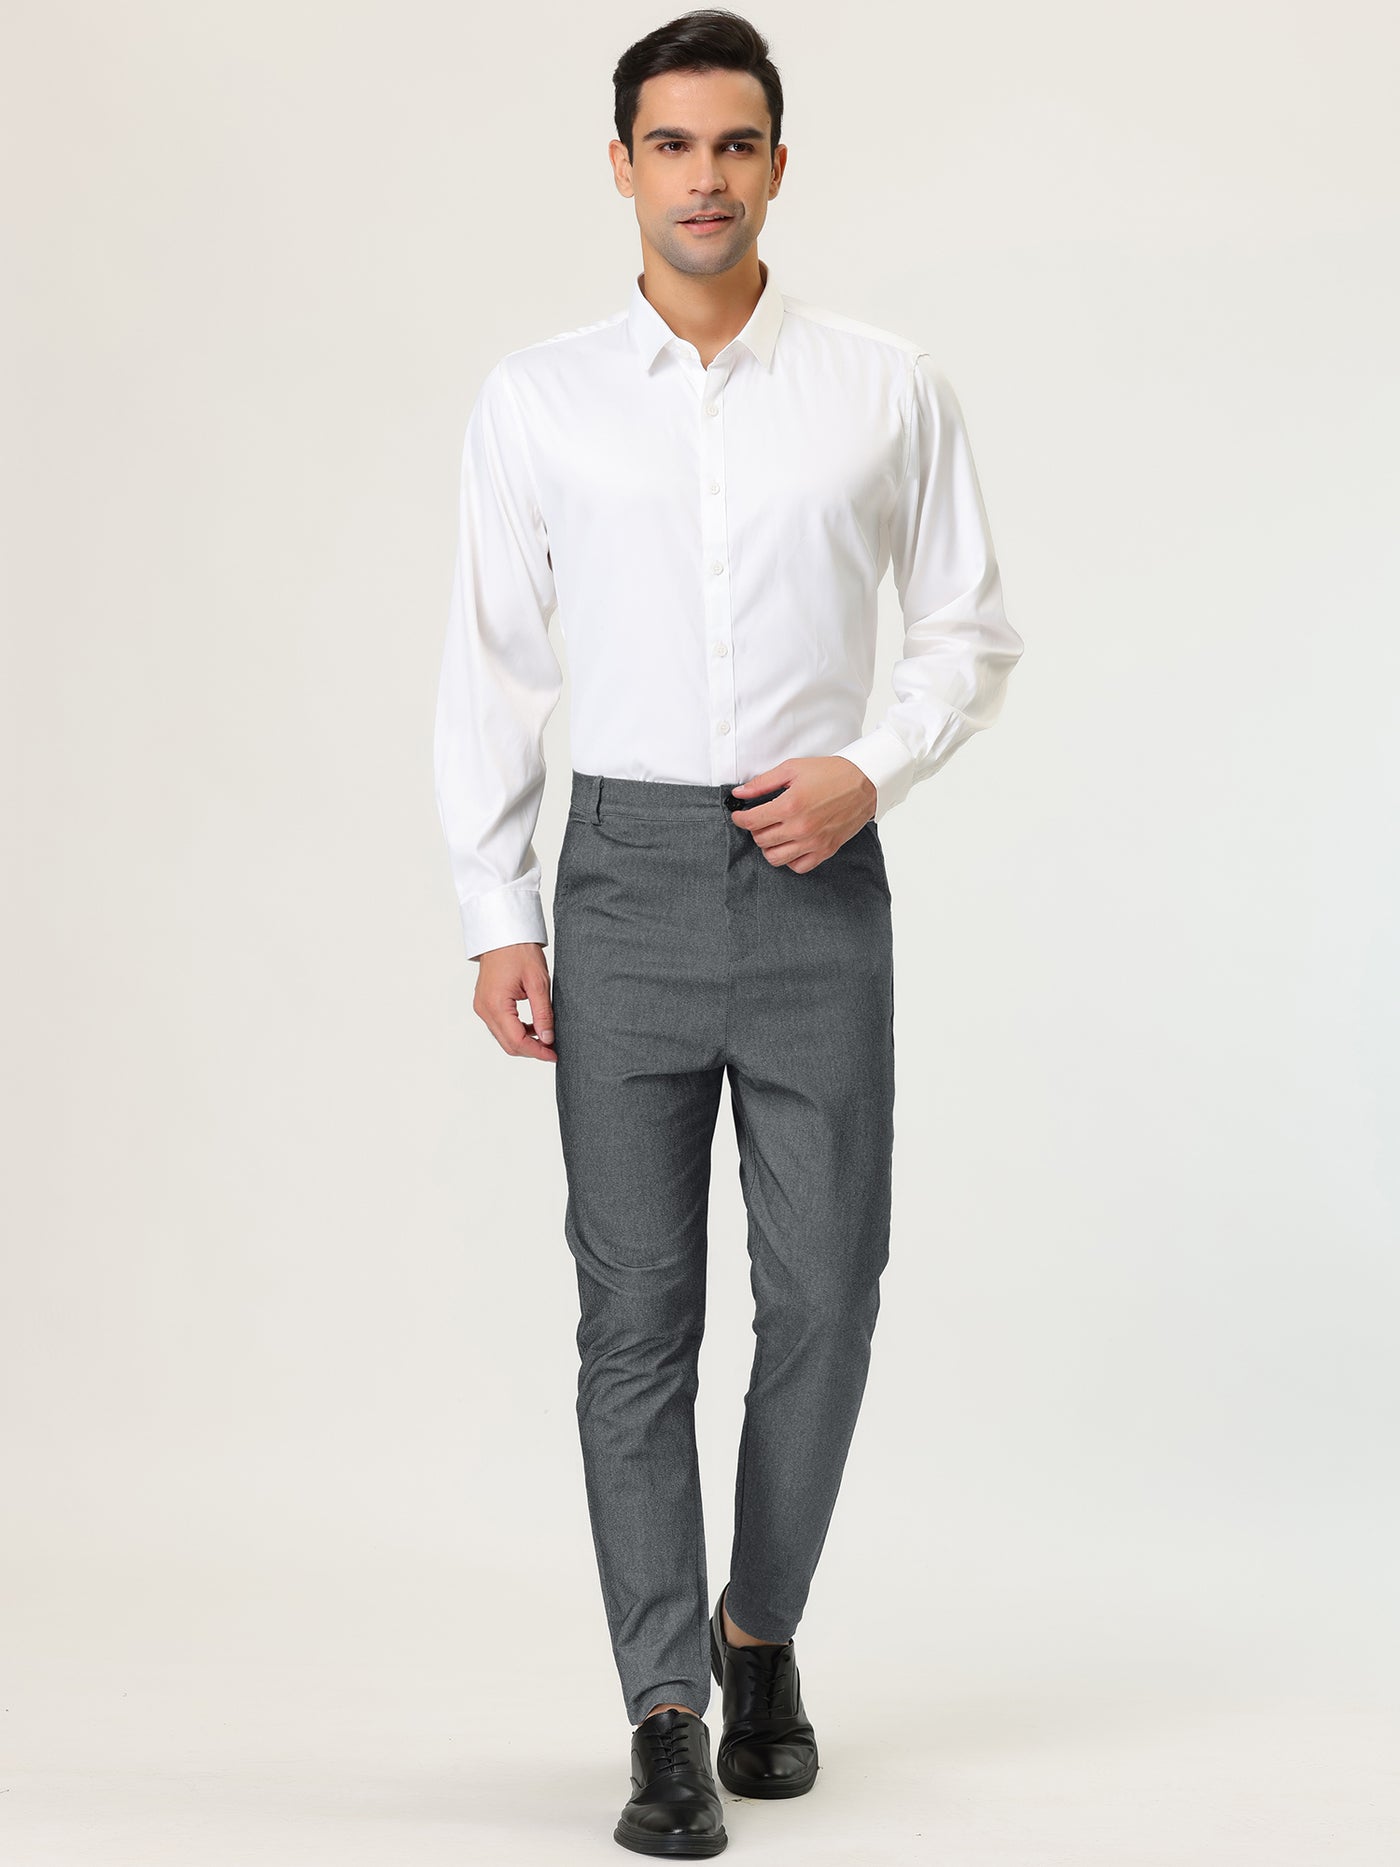 Bublédon Men's Skinny Trousers Solid Color Flat Front Pencil Dress Pants